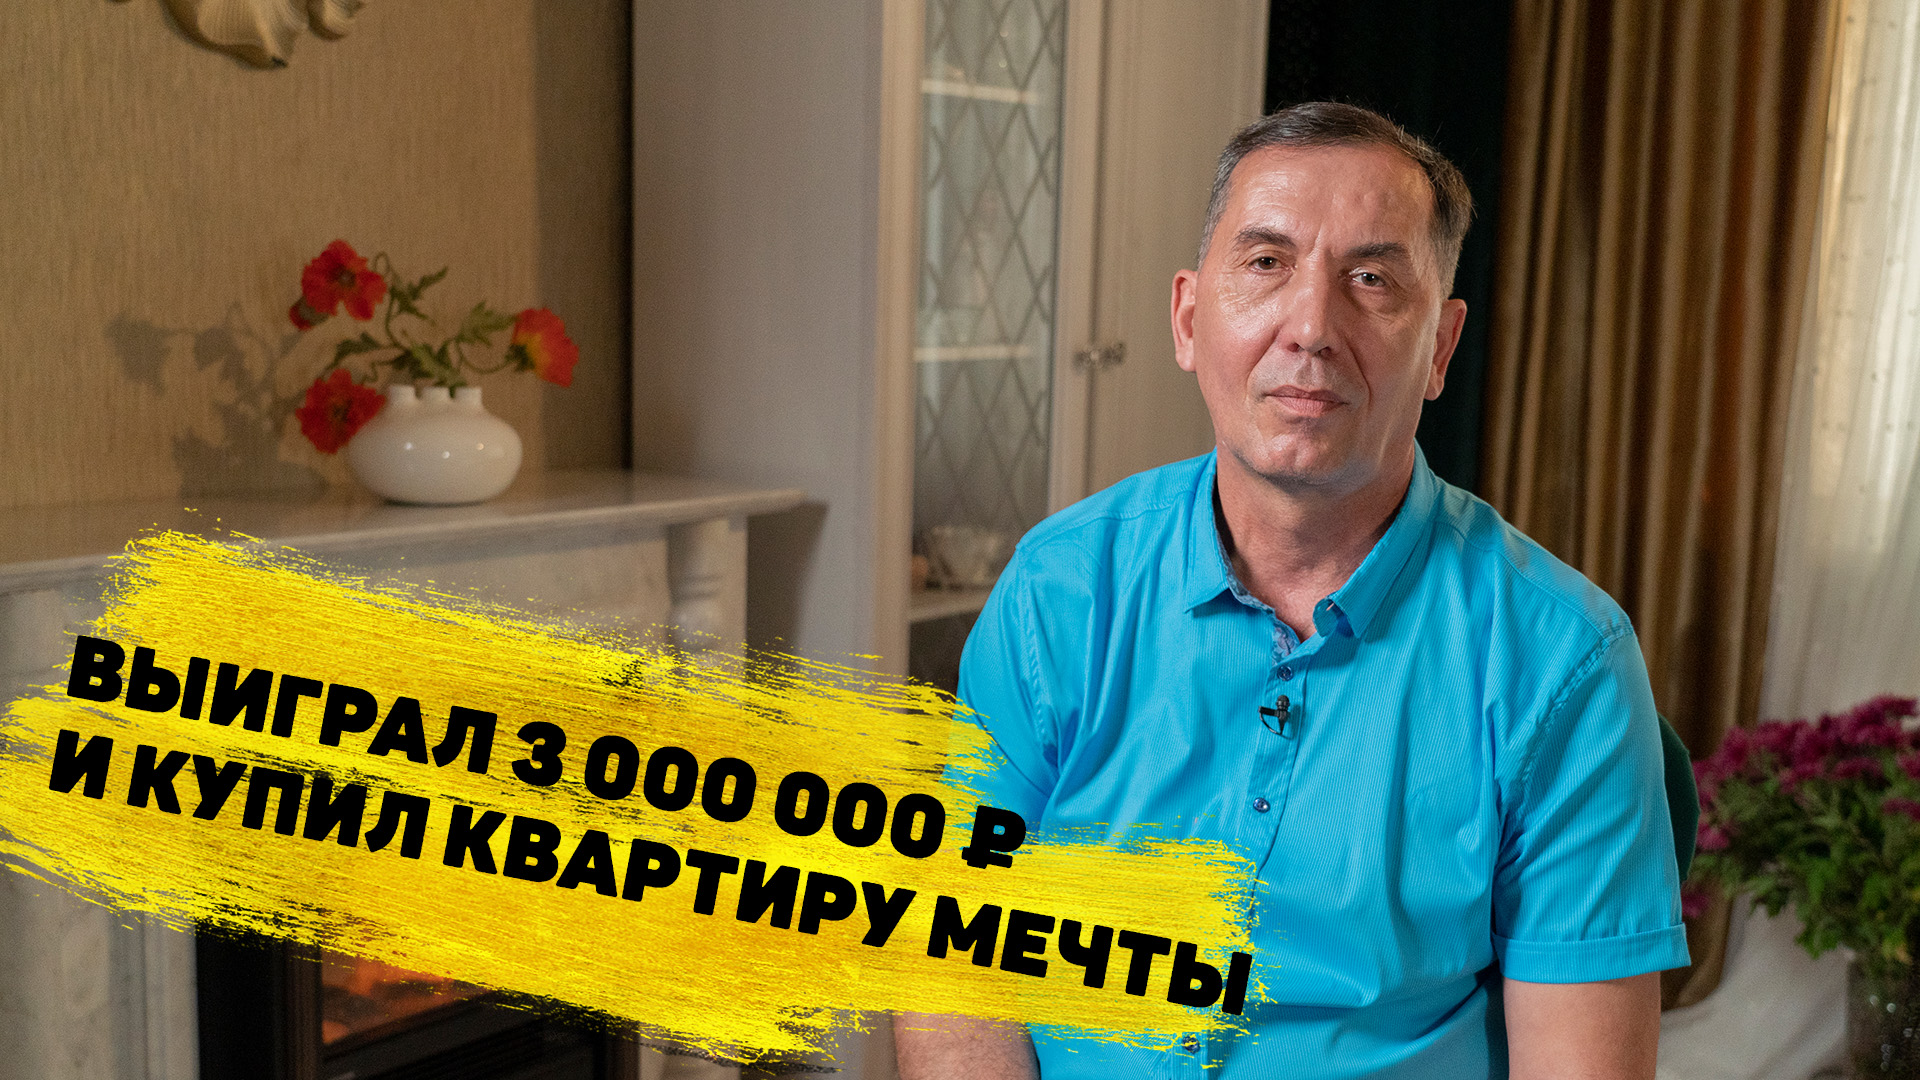 Сергей Дубинин выиграл 3 000 000 ₽ в «Жилищной лотерее»